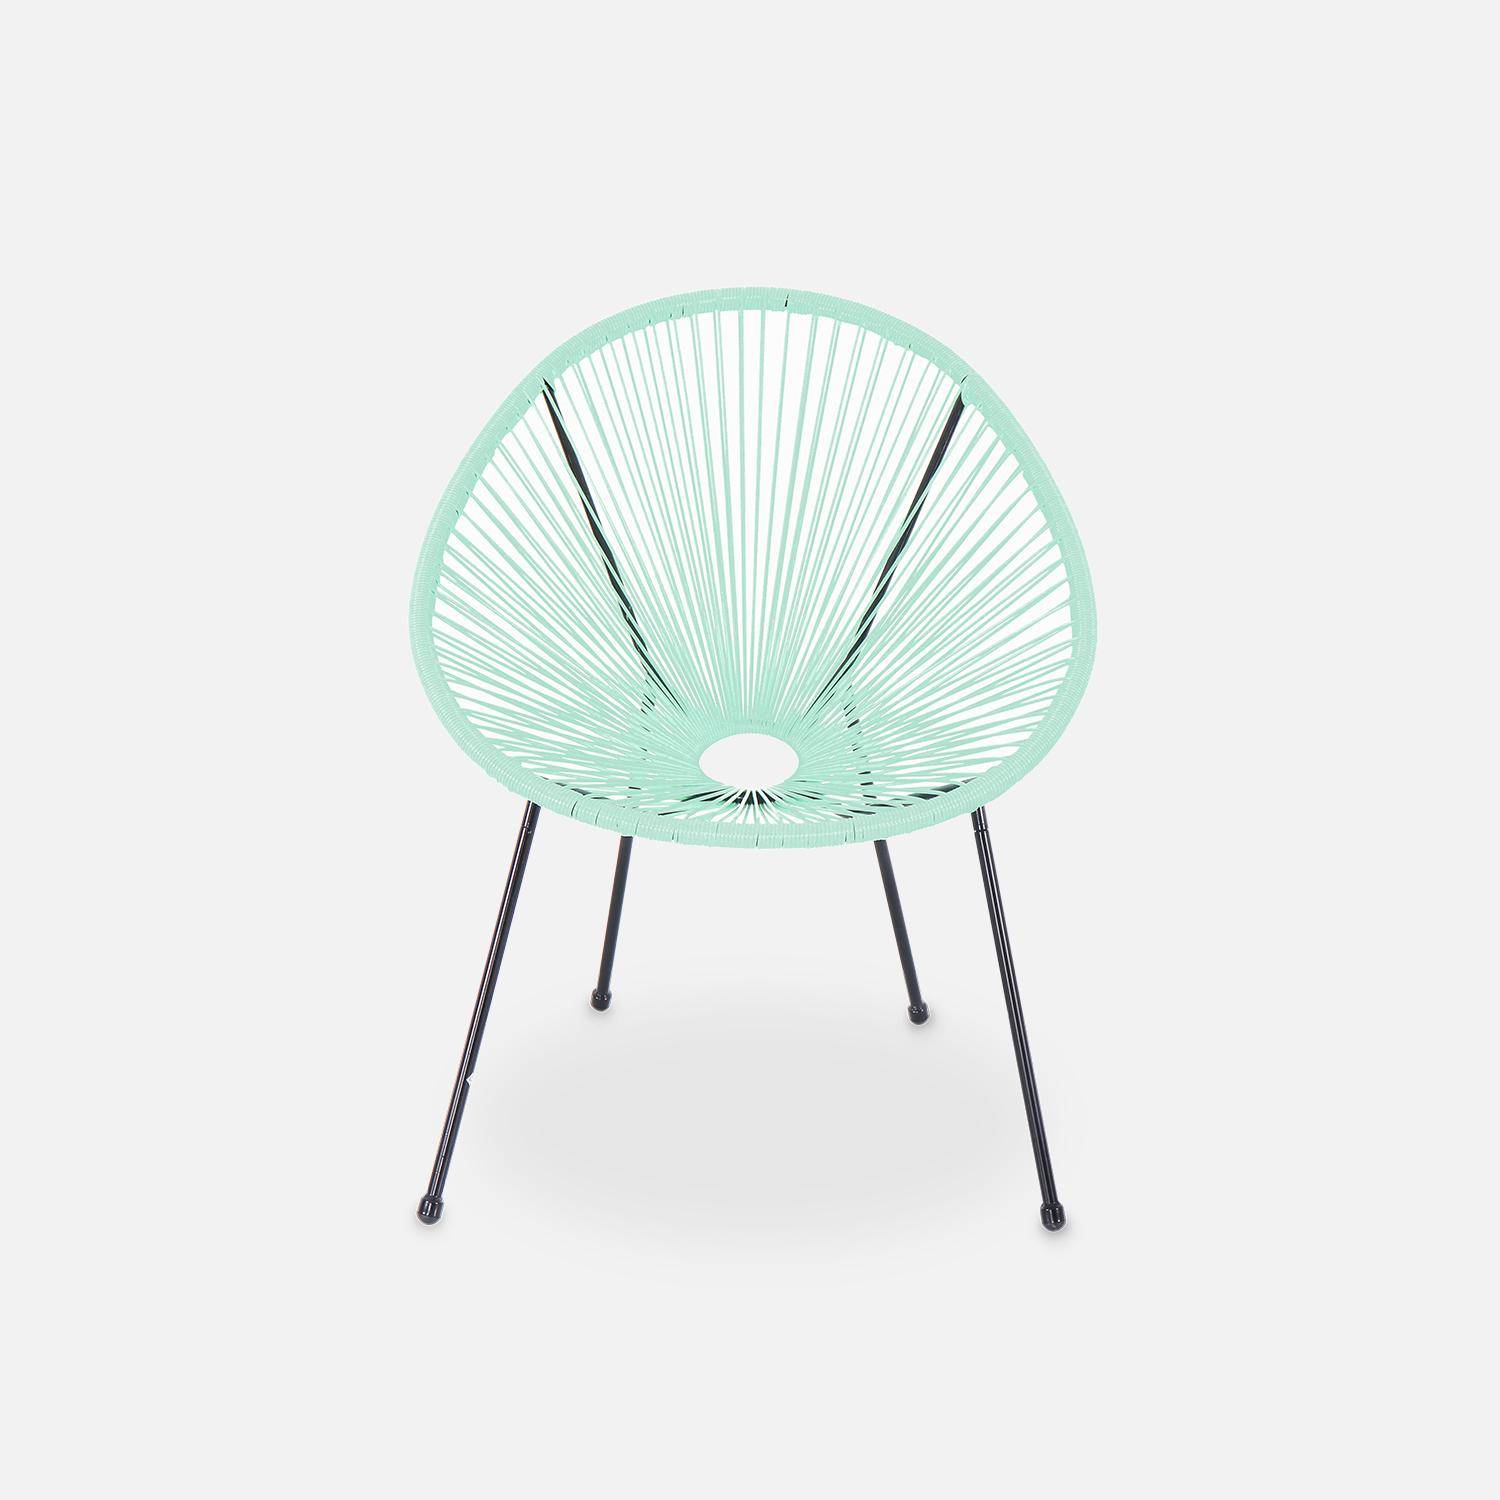 ACAPULCO stoel ei-vormig - Watergroen- Stoel 4 poten retro design, plastic koorden, binnen/buiten Photo3